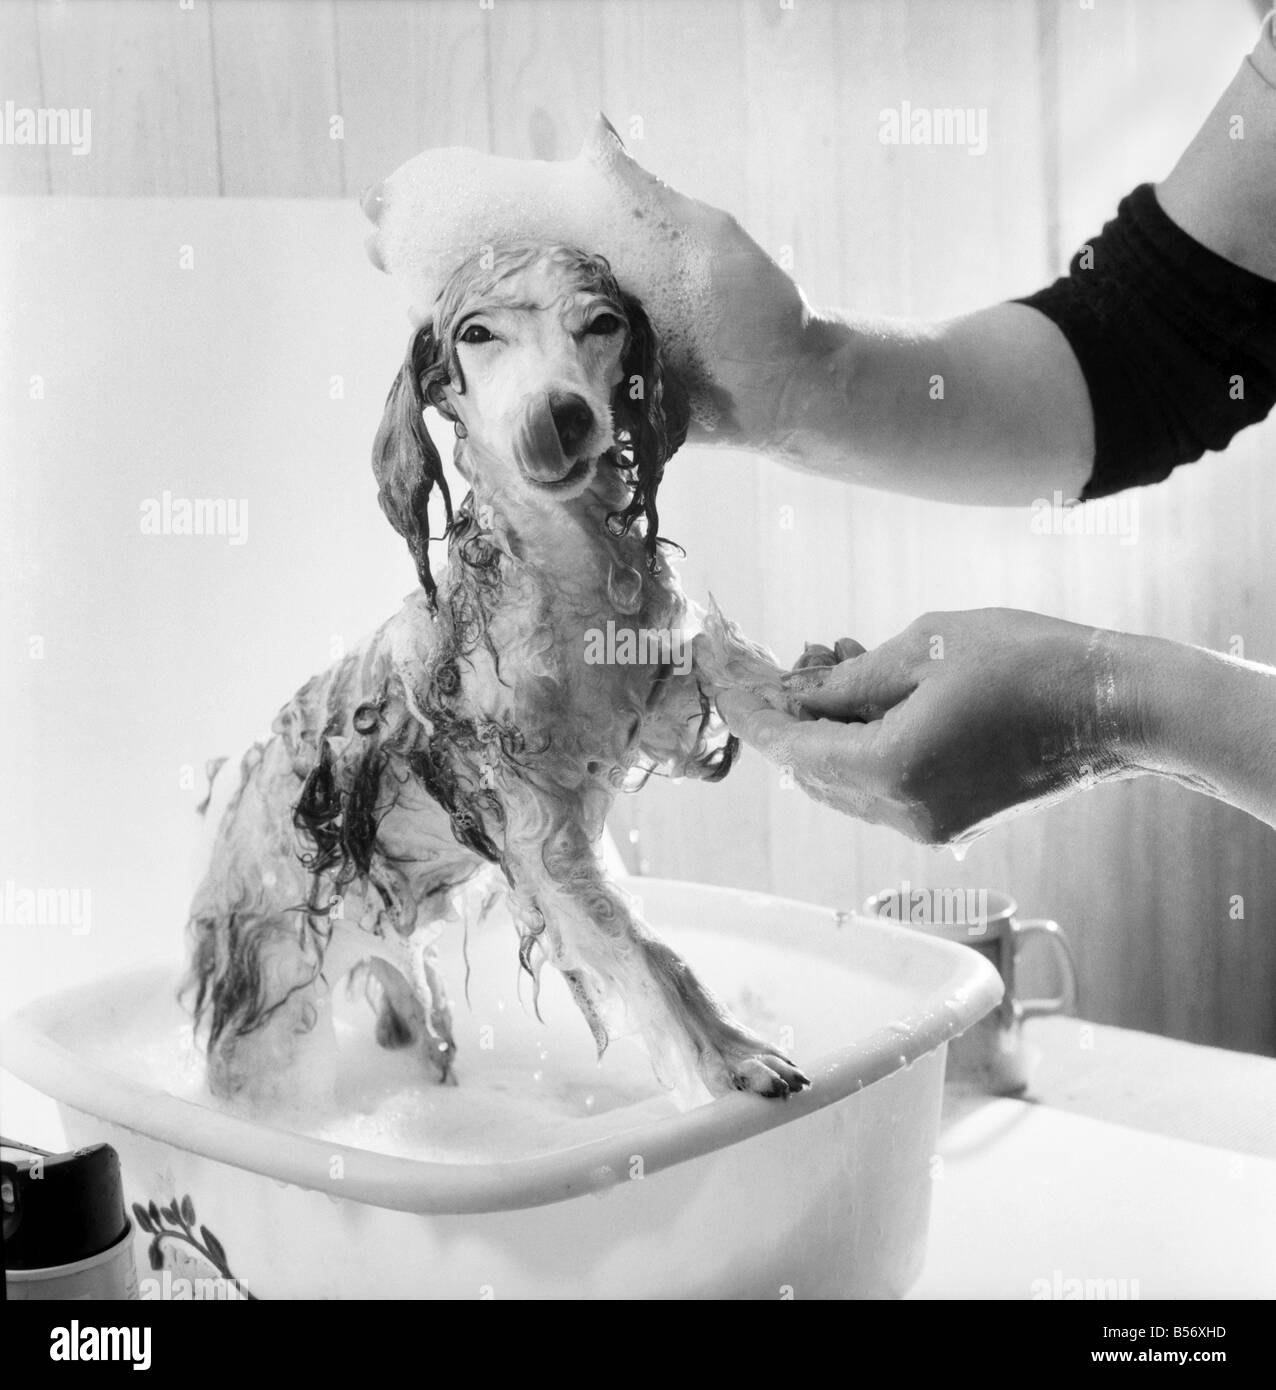 Barboncino posseduti da Miss Marilyn Willis visto qui come ottenere il completo trattamento di bellezza, shampoo e manicure presso il locale salone di bellezza. Gennaio 1975 75-00353-003 Foto Stock